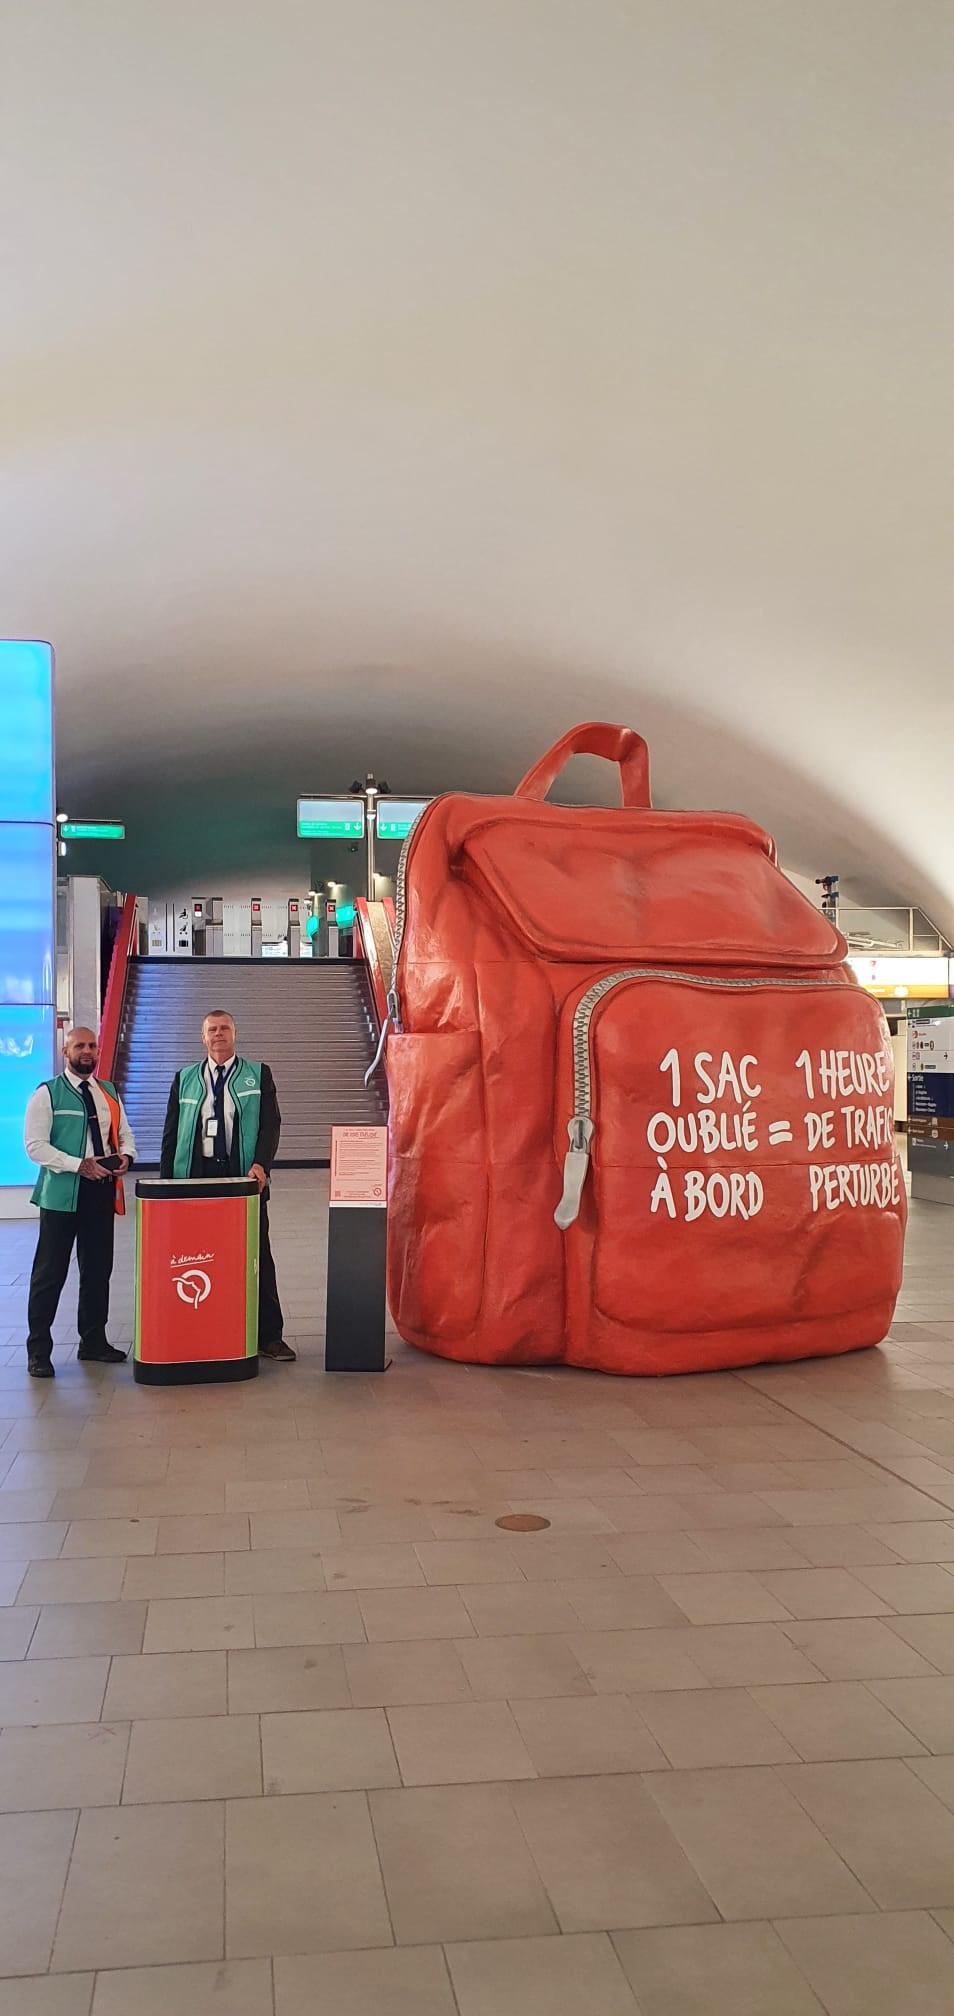 Visuel Quel est ce sac géant aperçu dans les espaces de la gare d’Auber ?